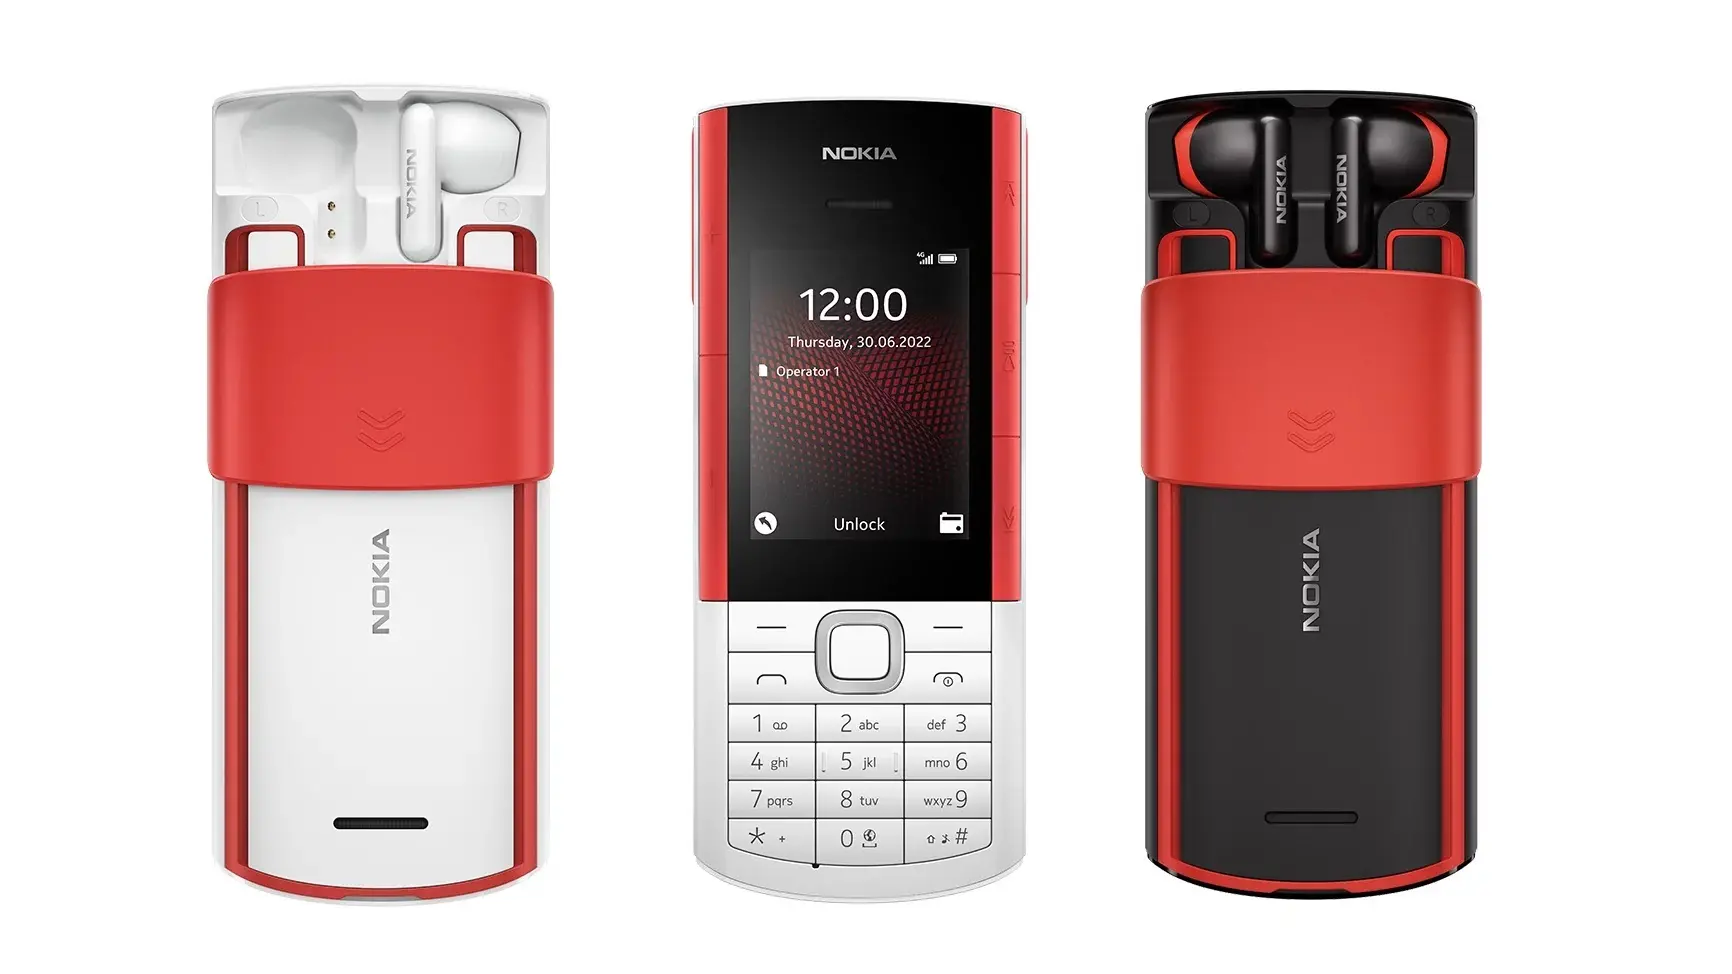 Nokia 5710 XpressAudio es el nuevo celular con auriculares incluidos